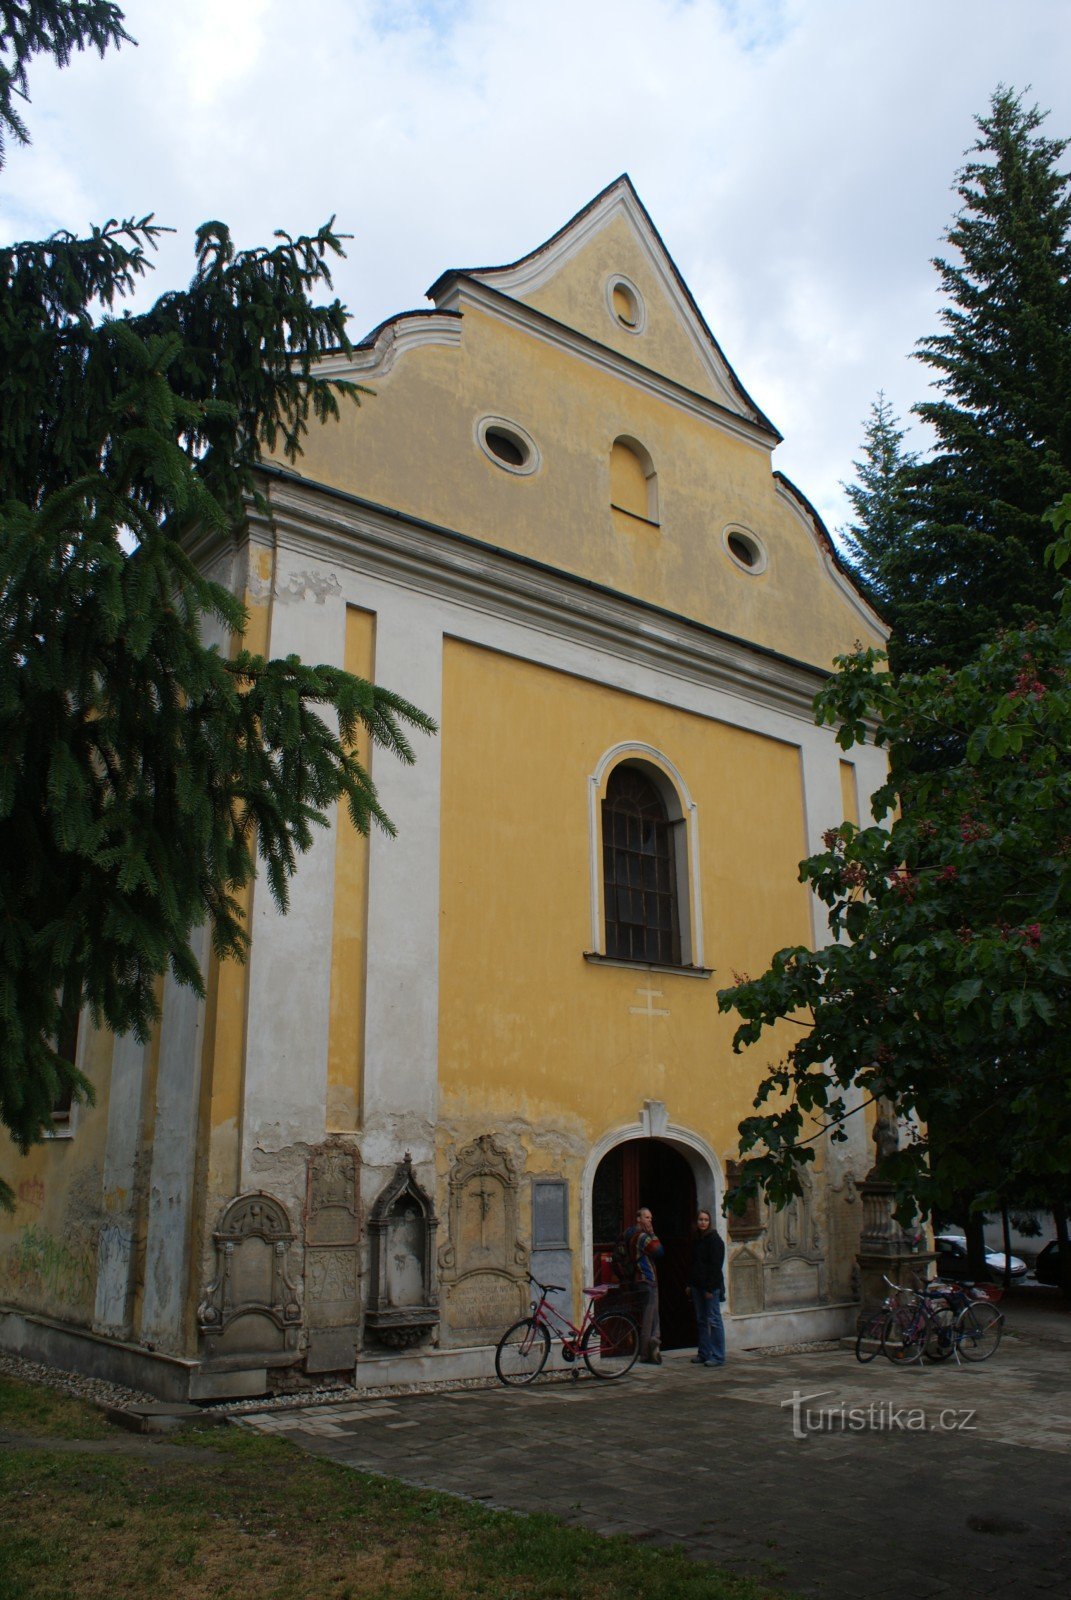 シュンペルク – バルボルカ (聖バーバラ教会と墓地礼拝堂)